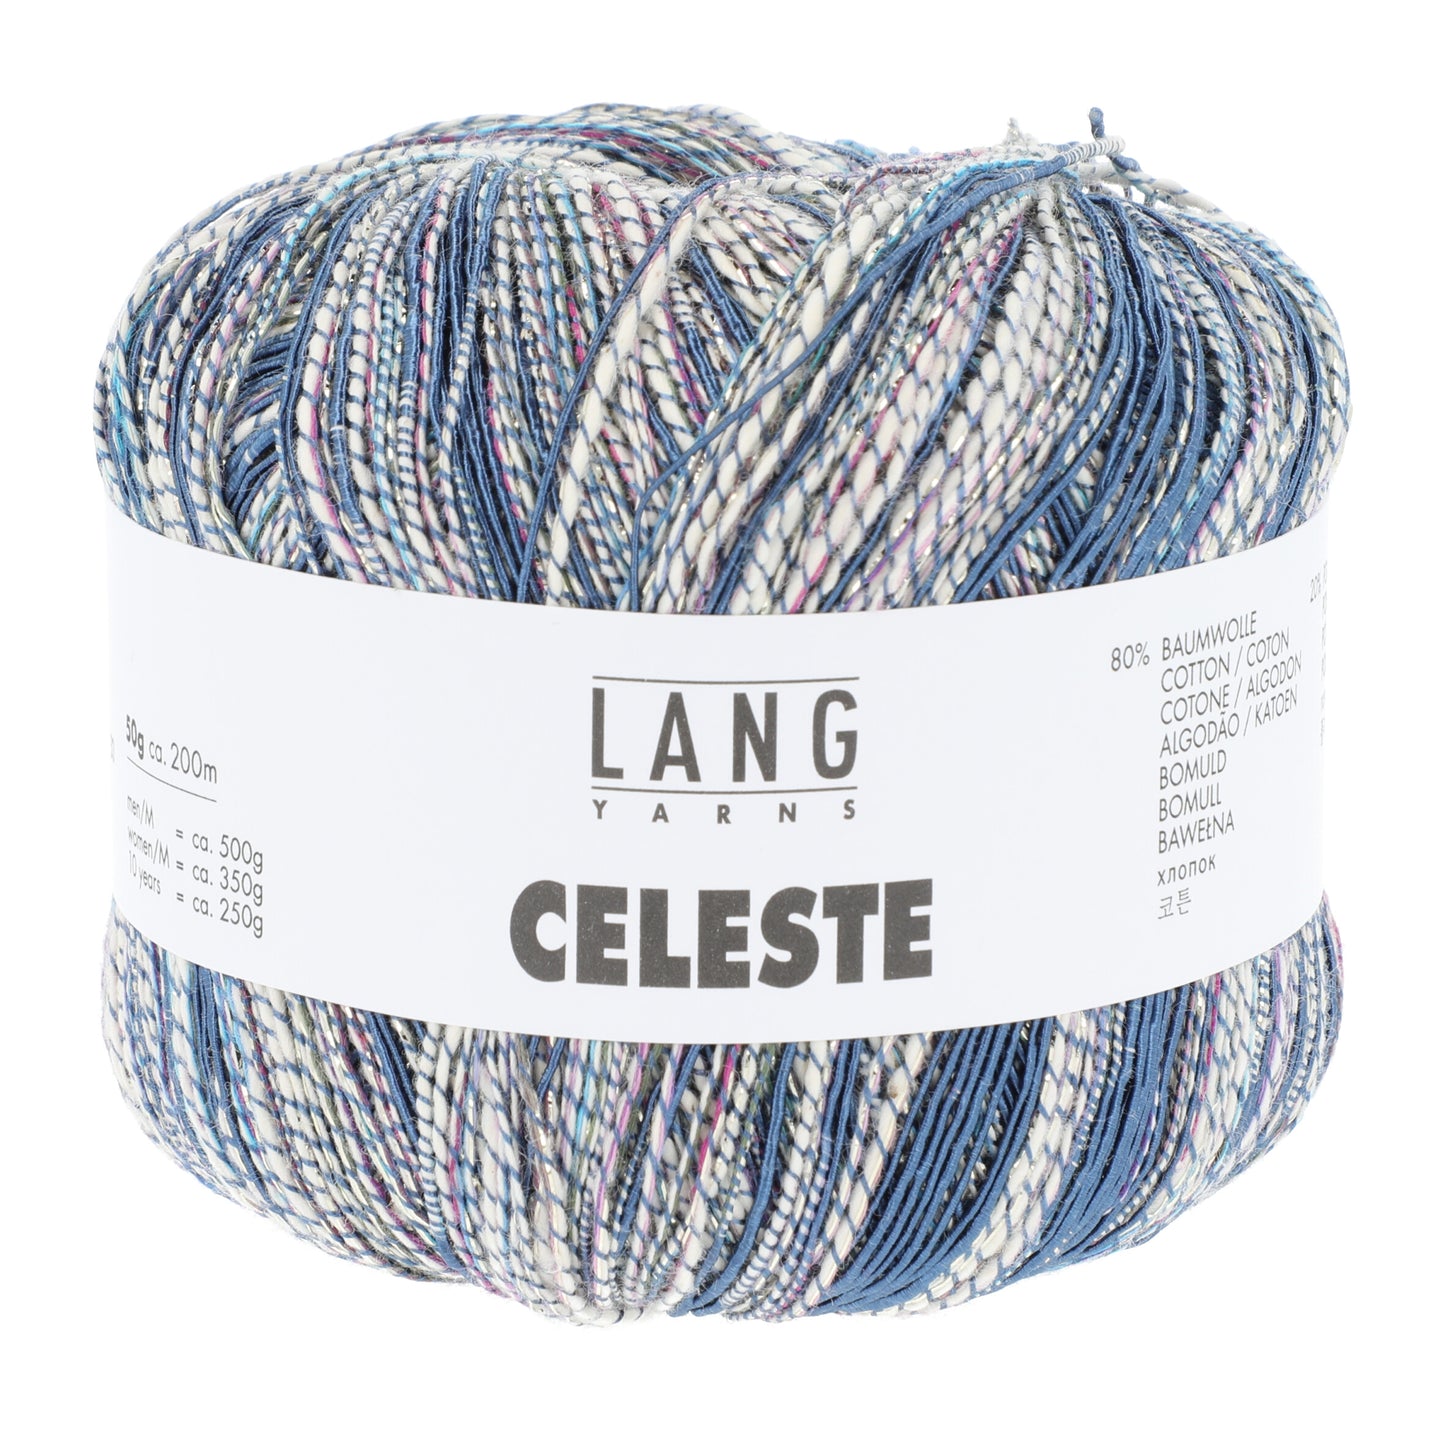 Lang Tarns Celeste / 1110.0034